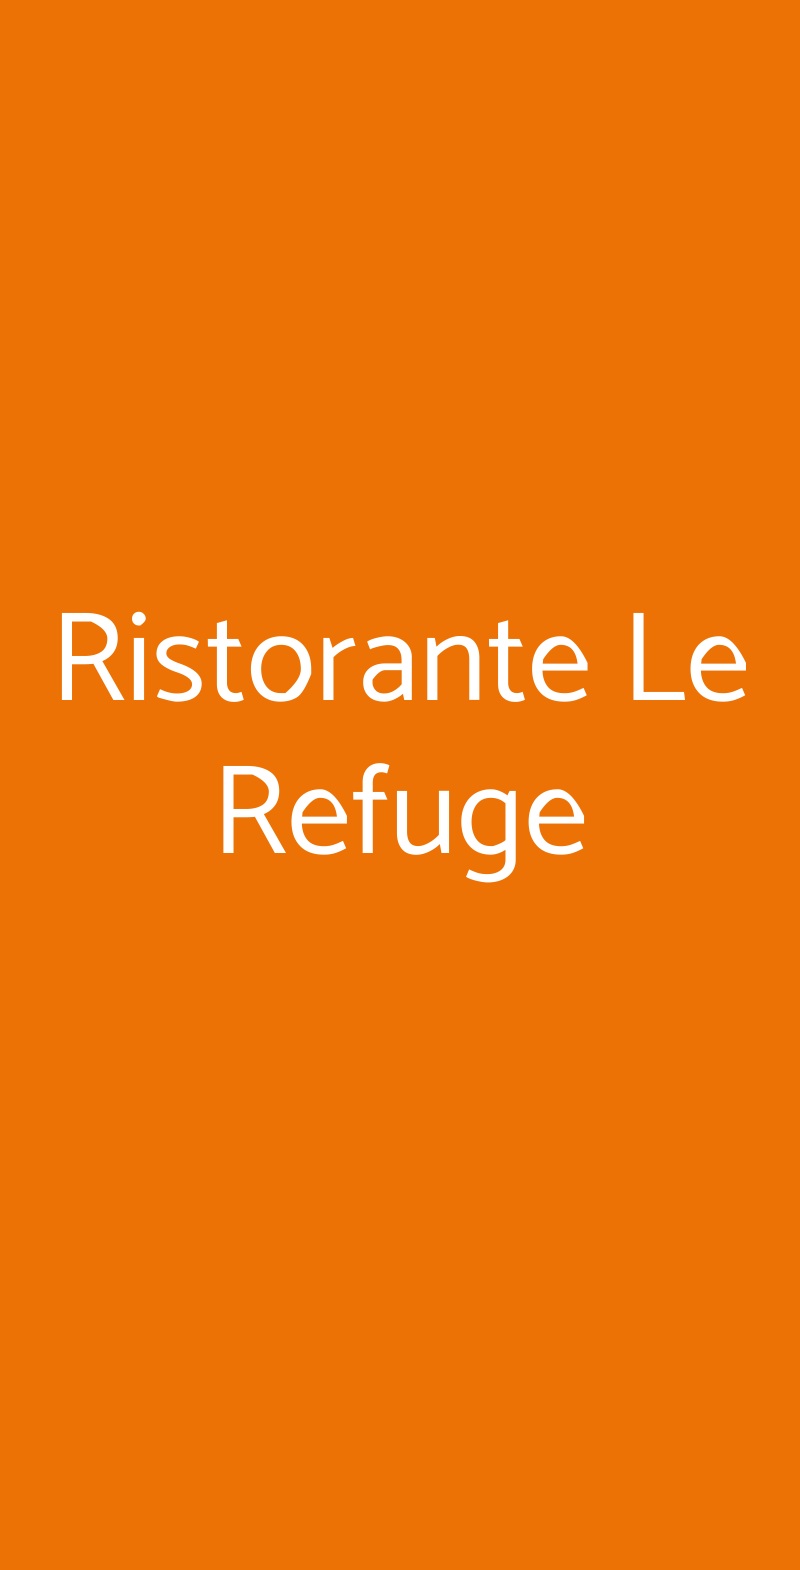 Ristorante Le Refuge Milano menù 1 pagina